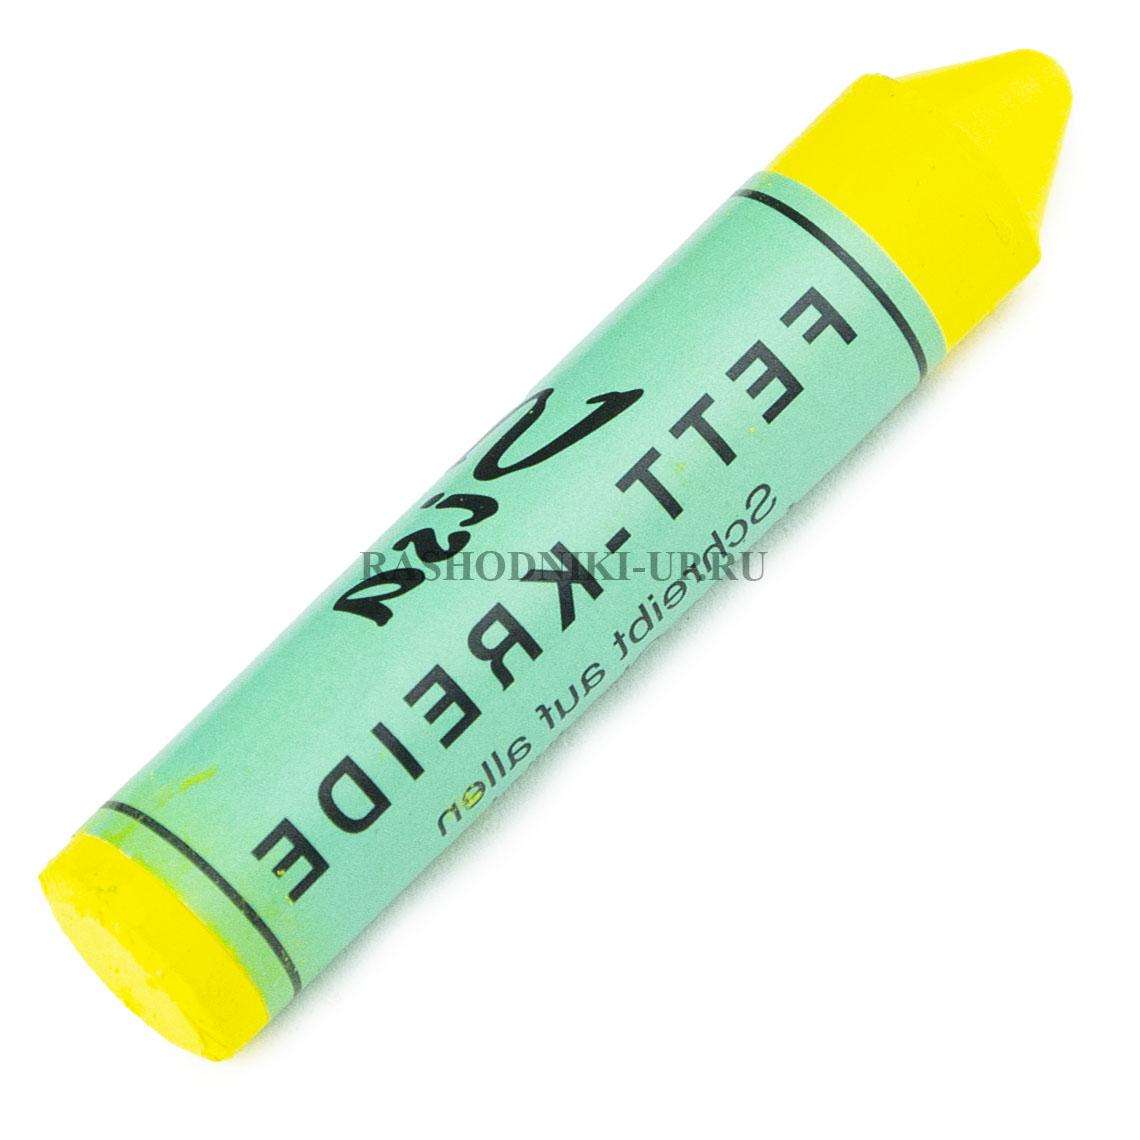 595 0203 Мел-маркер Rema Tip-Top желтый